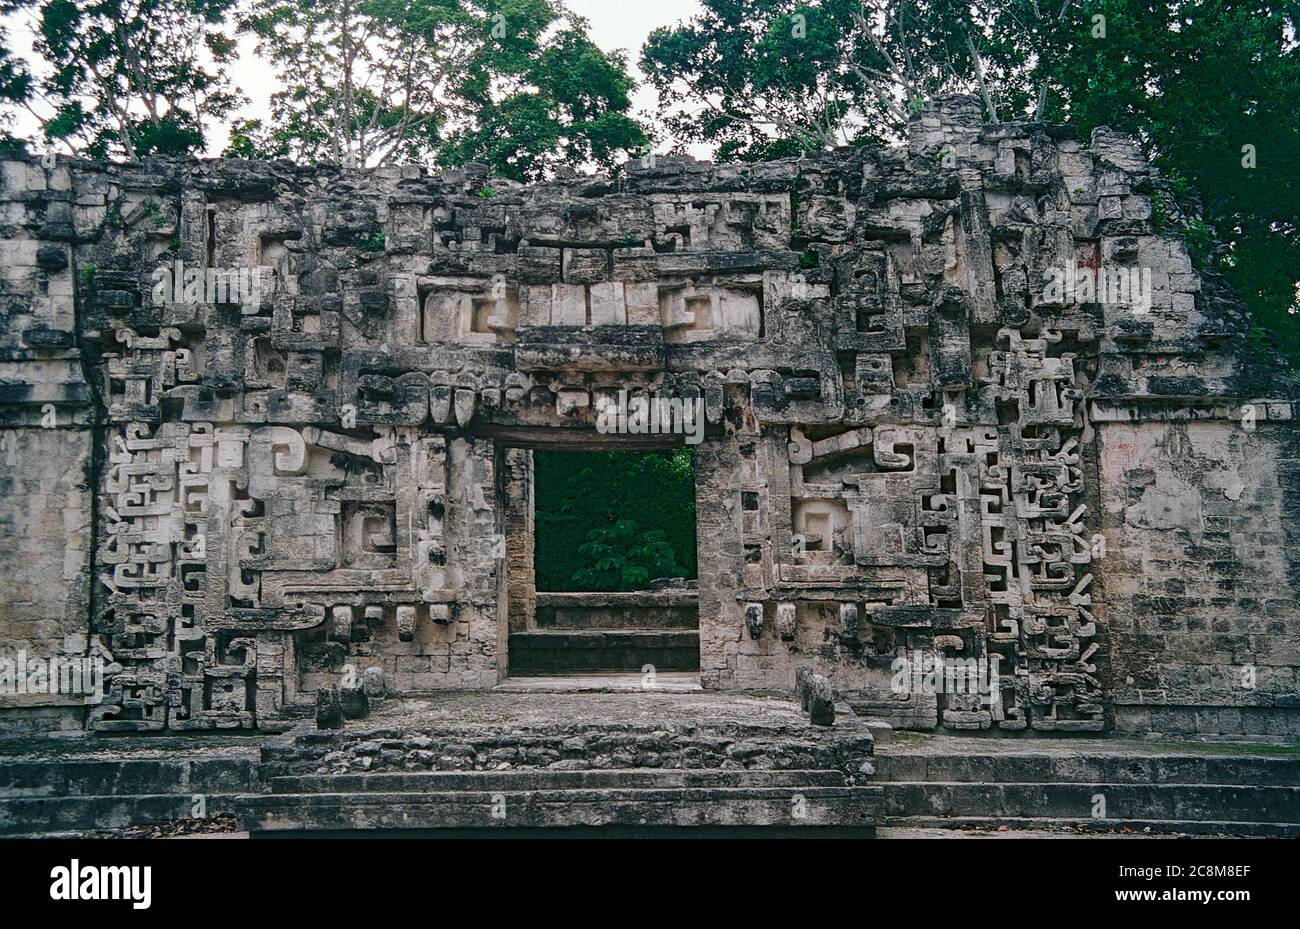 Die Öffnung der Schlange in Struktur II. Chicanna Maya Ruinen. Campeche, Mexiko. Vintage Film Bild - ca. 1990 Stockfoto